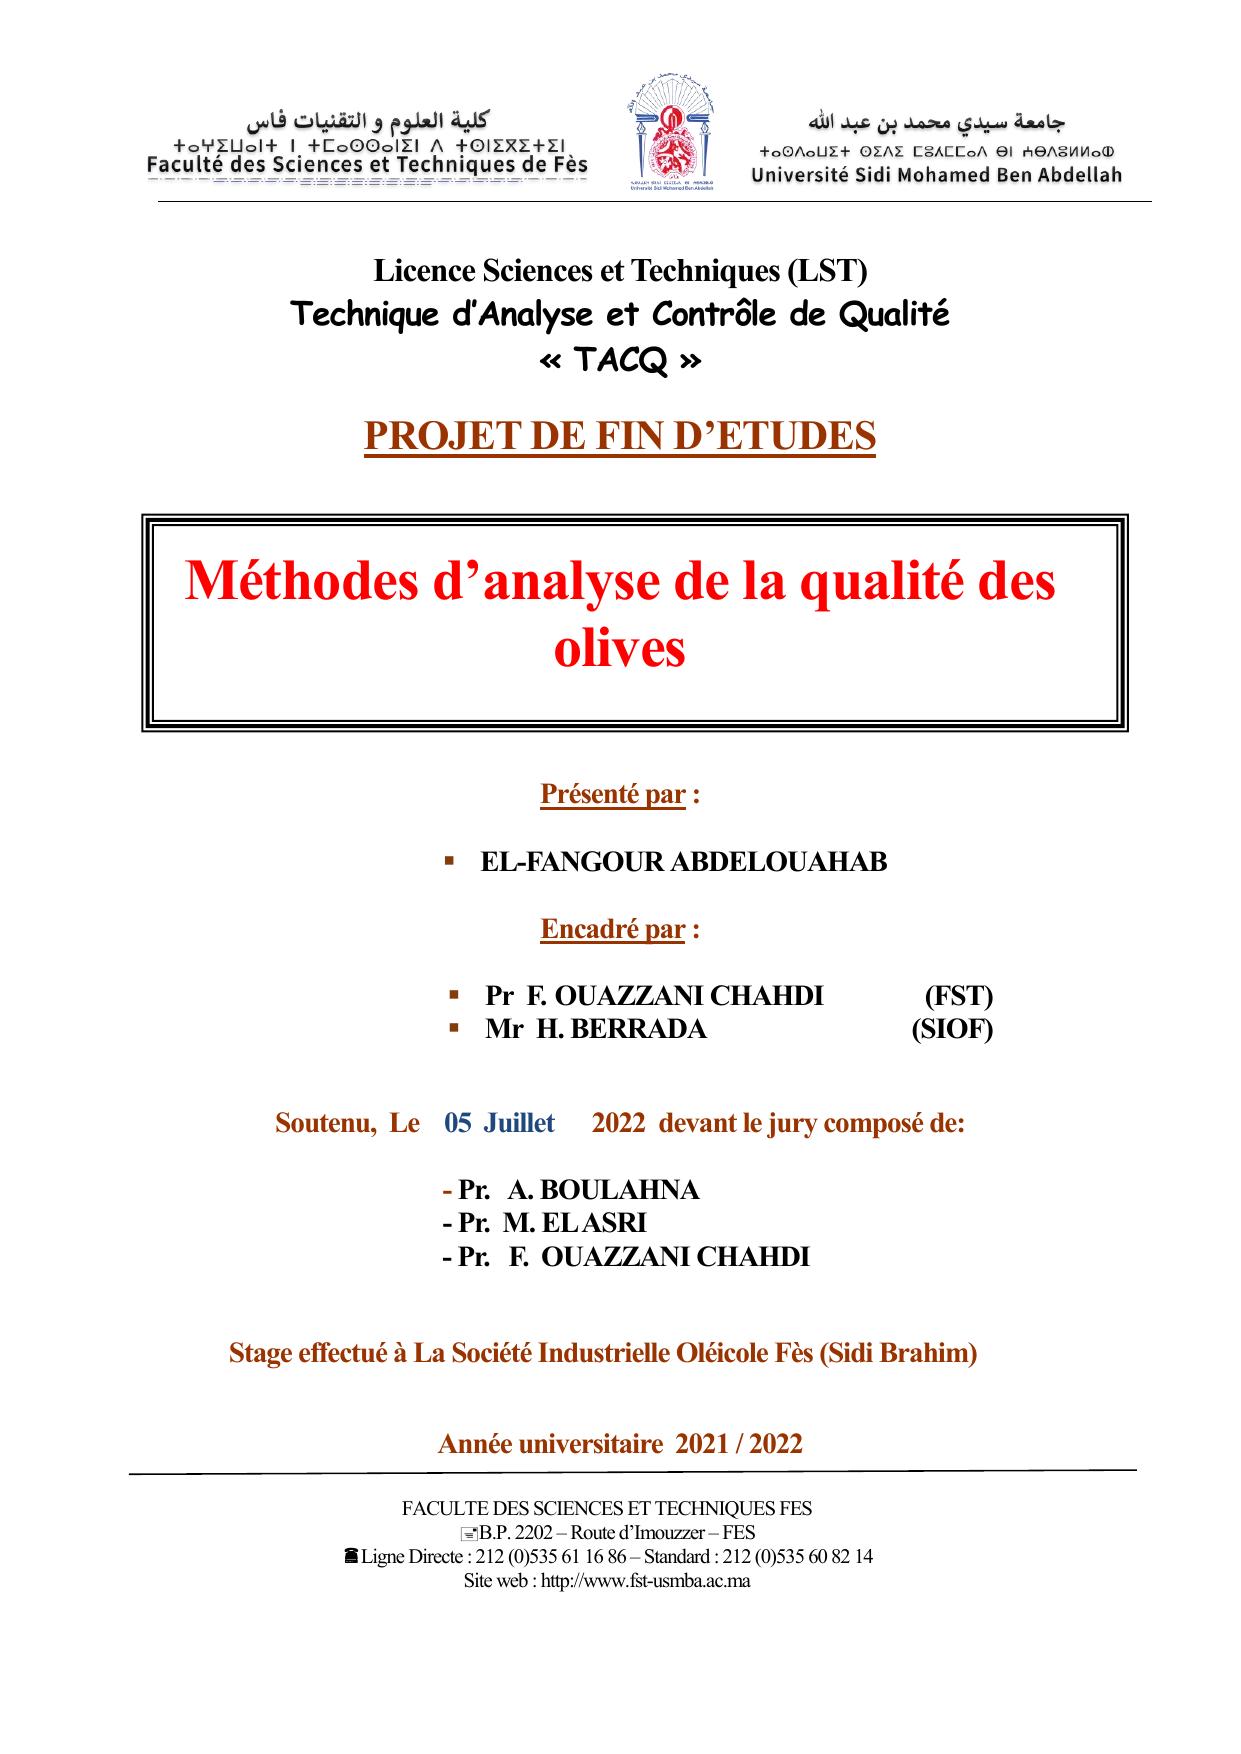 méthodes d'analyse de la qualité des olives